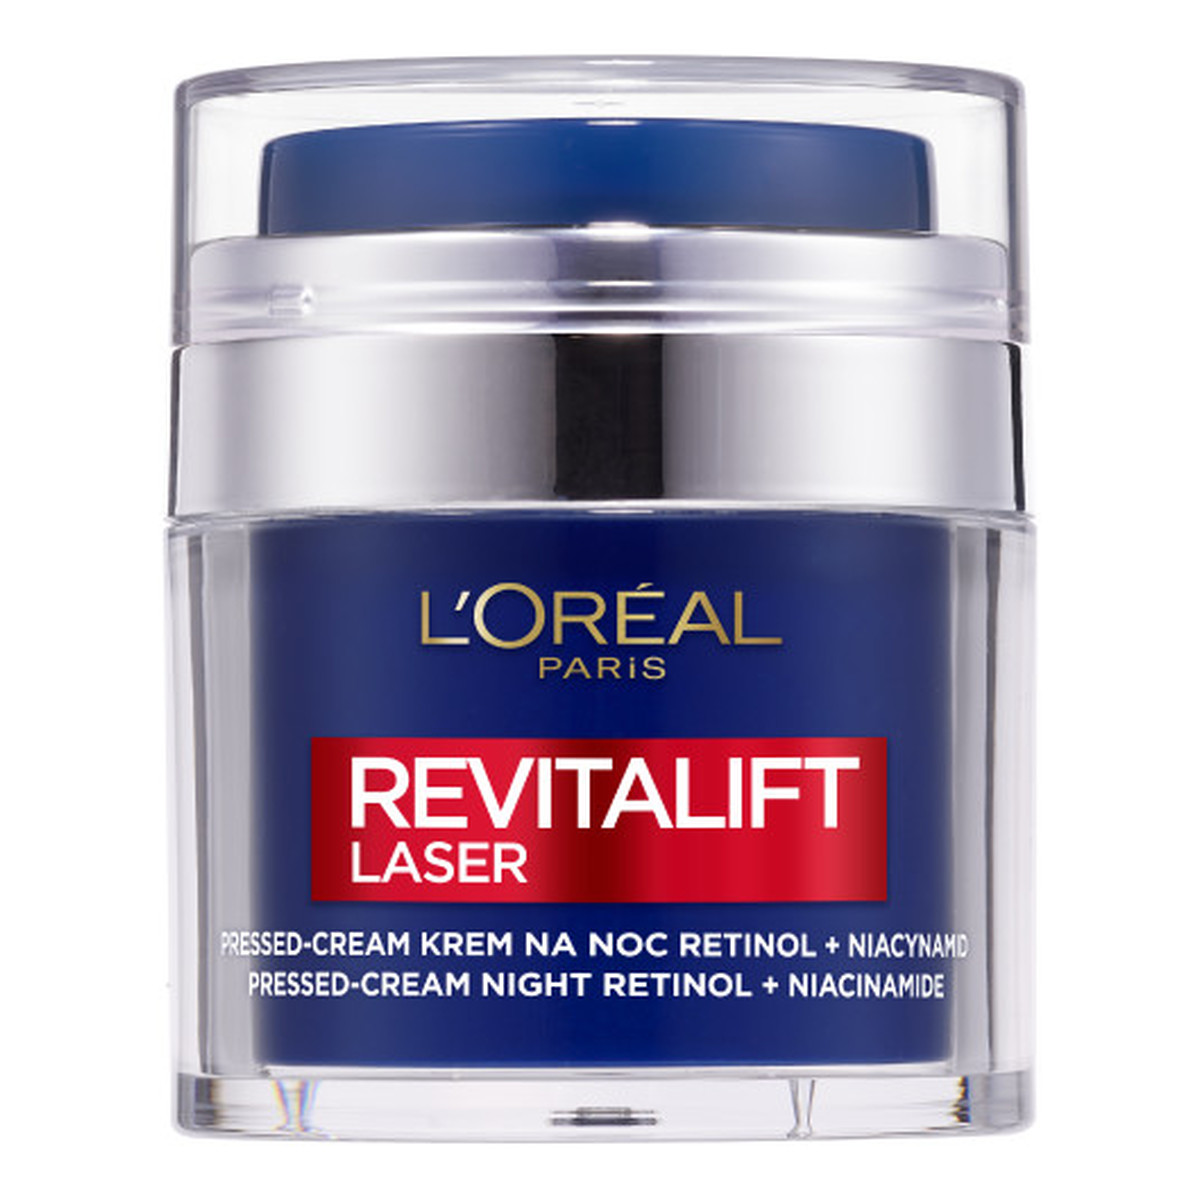 L'Oreal Paris Revitalift Laser Pressed Cream przeciwzmarszczkowy Krem do twarzy na noc retinol i niacynamid 50ml